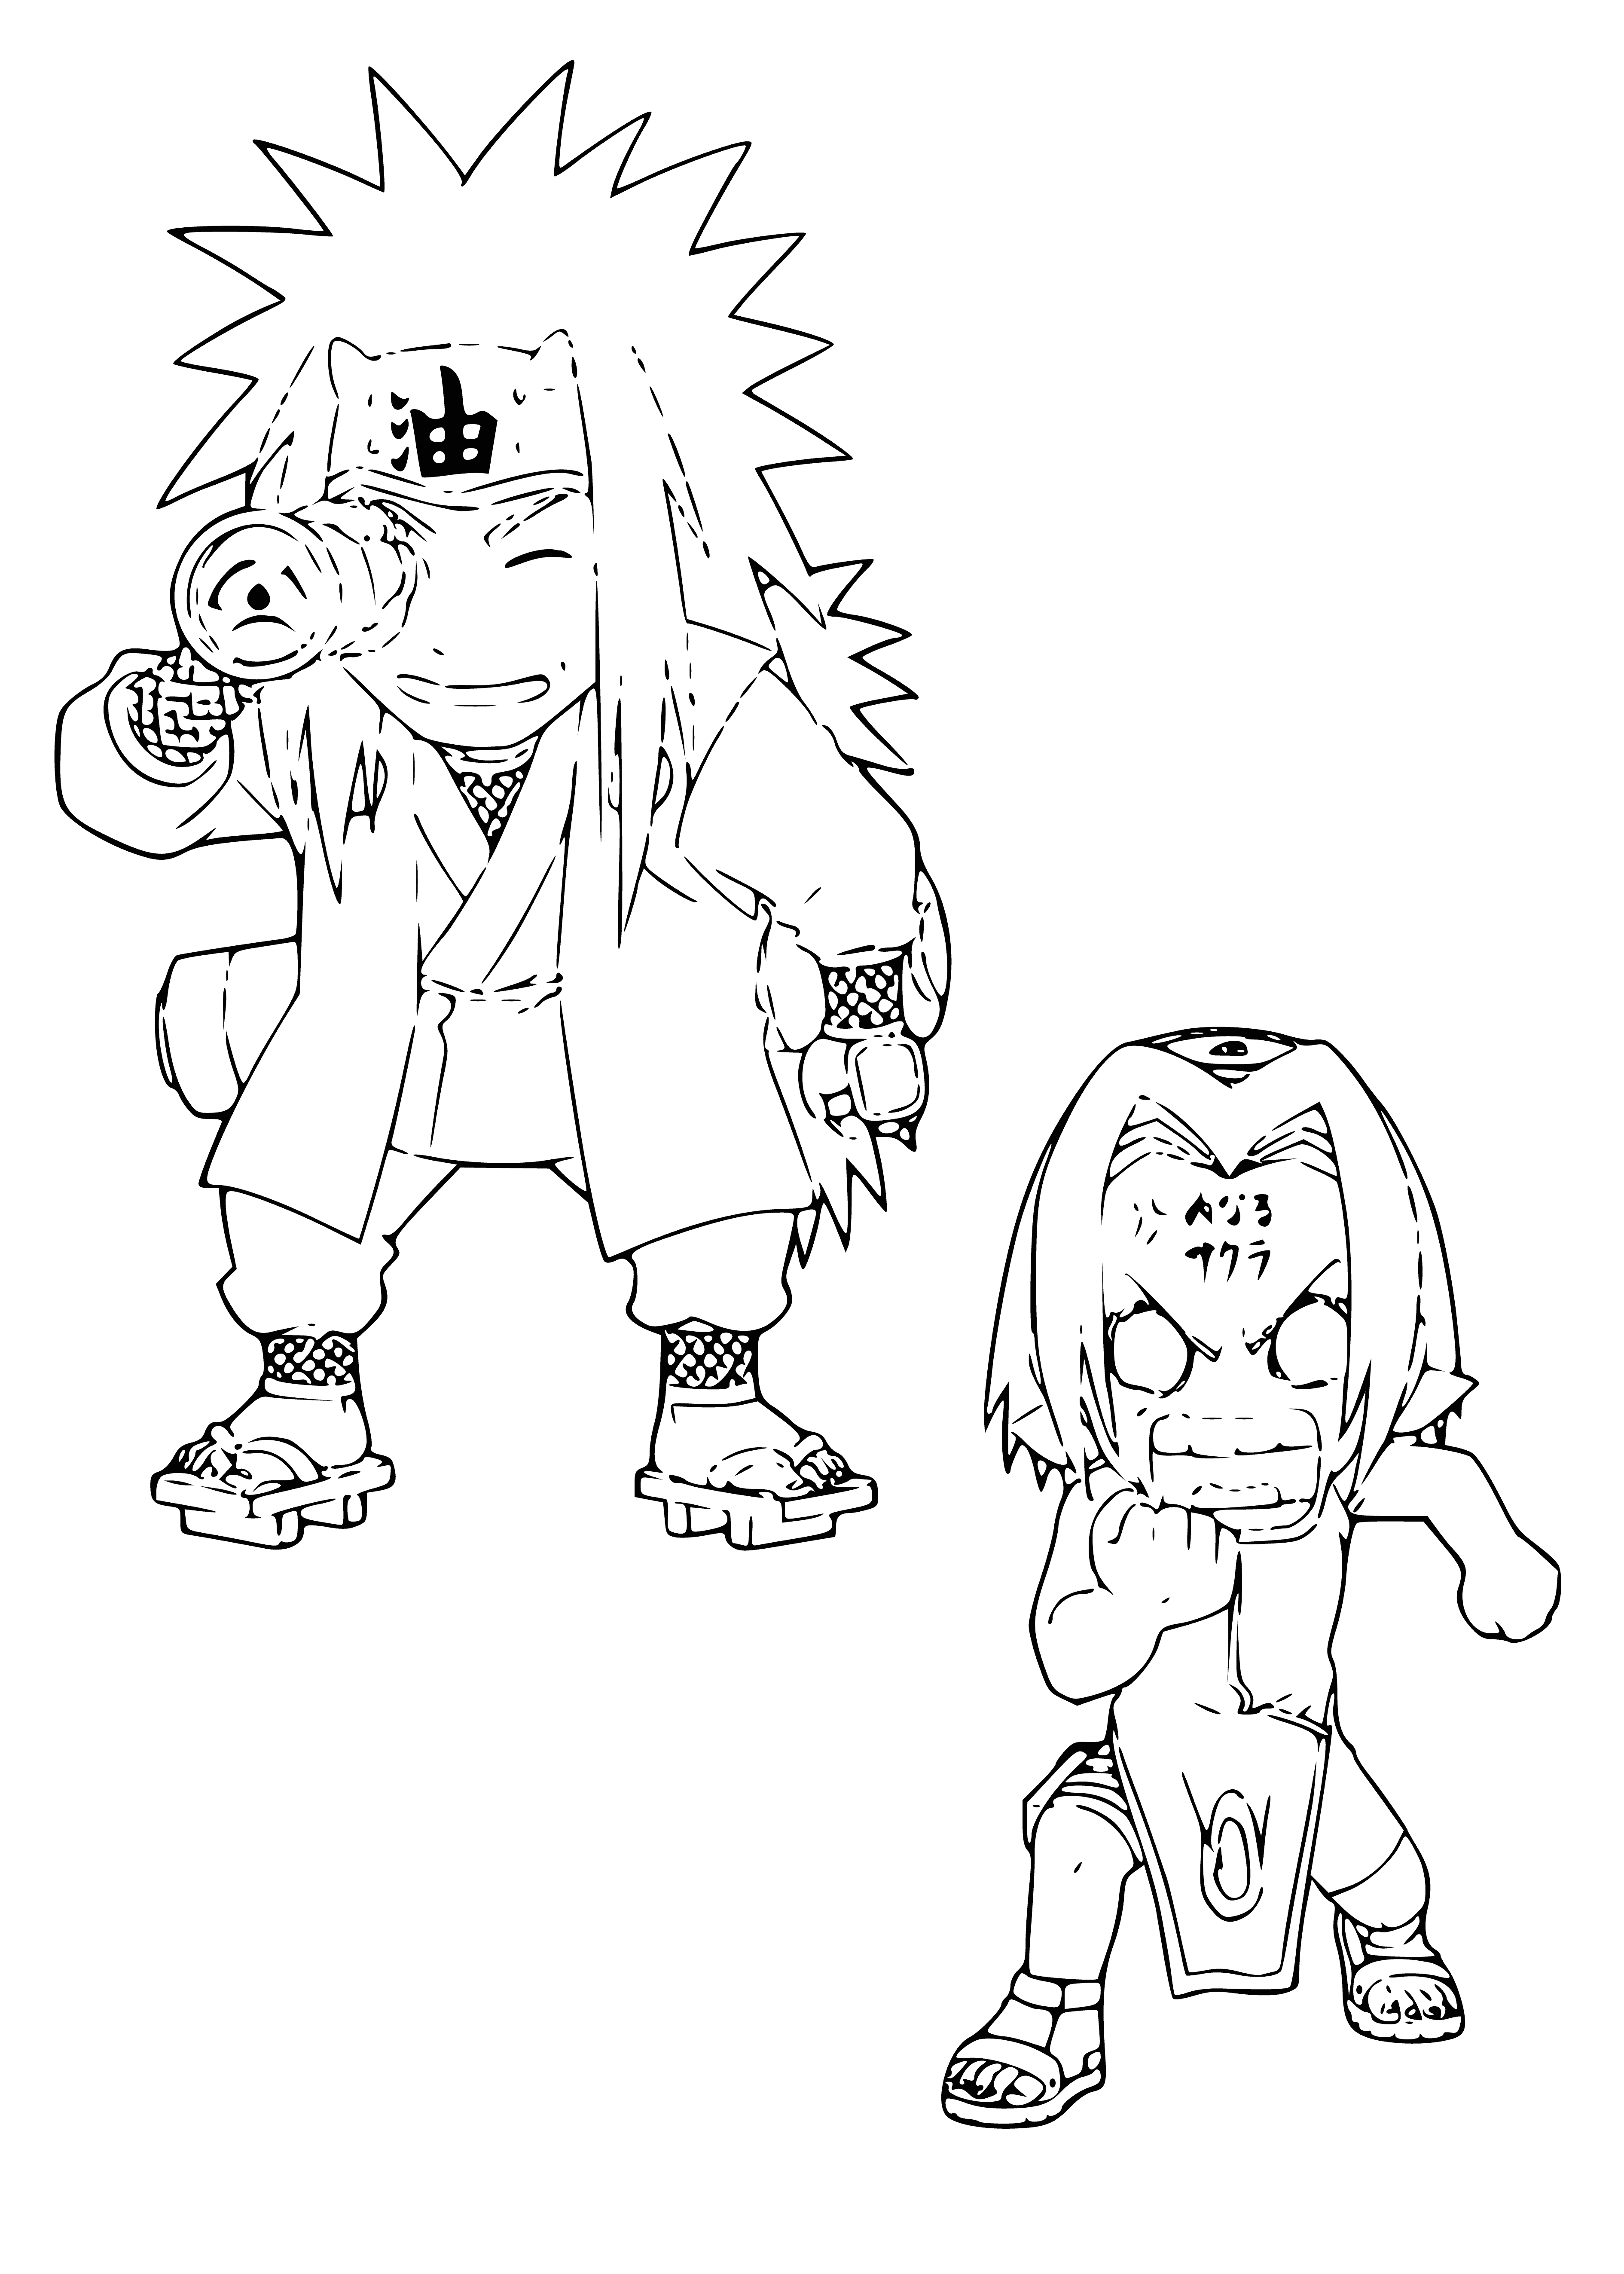 Naruto and Sakura coloring page